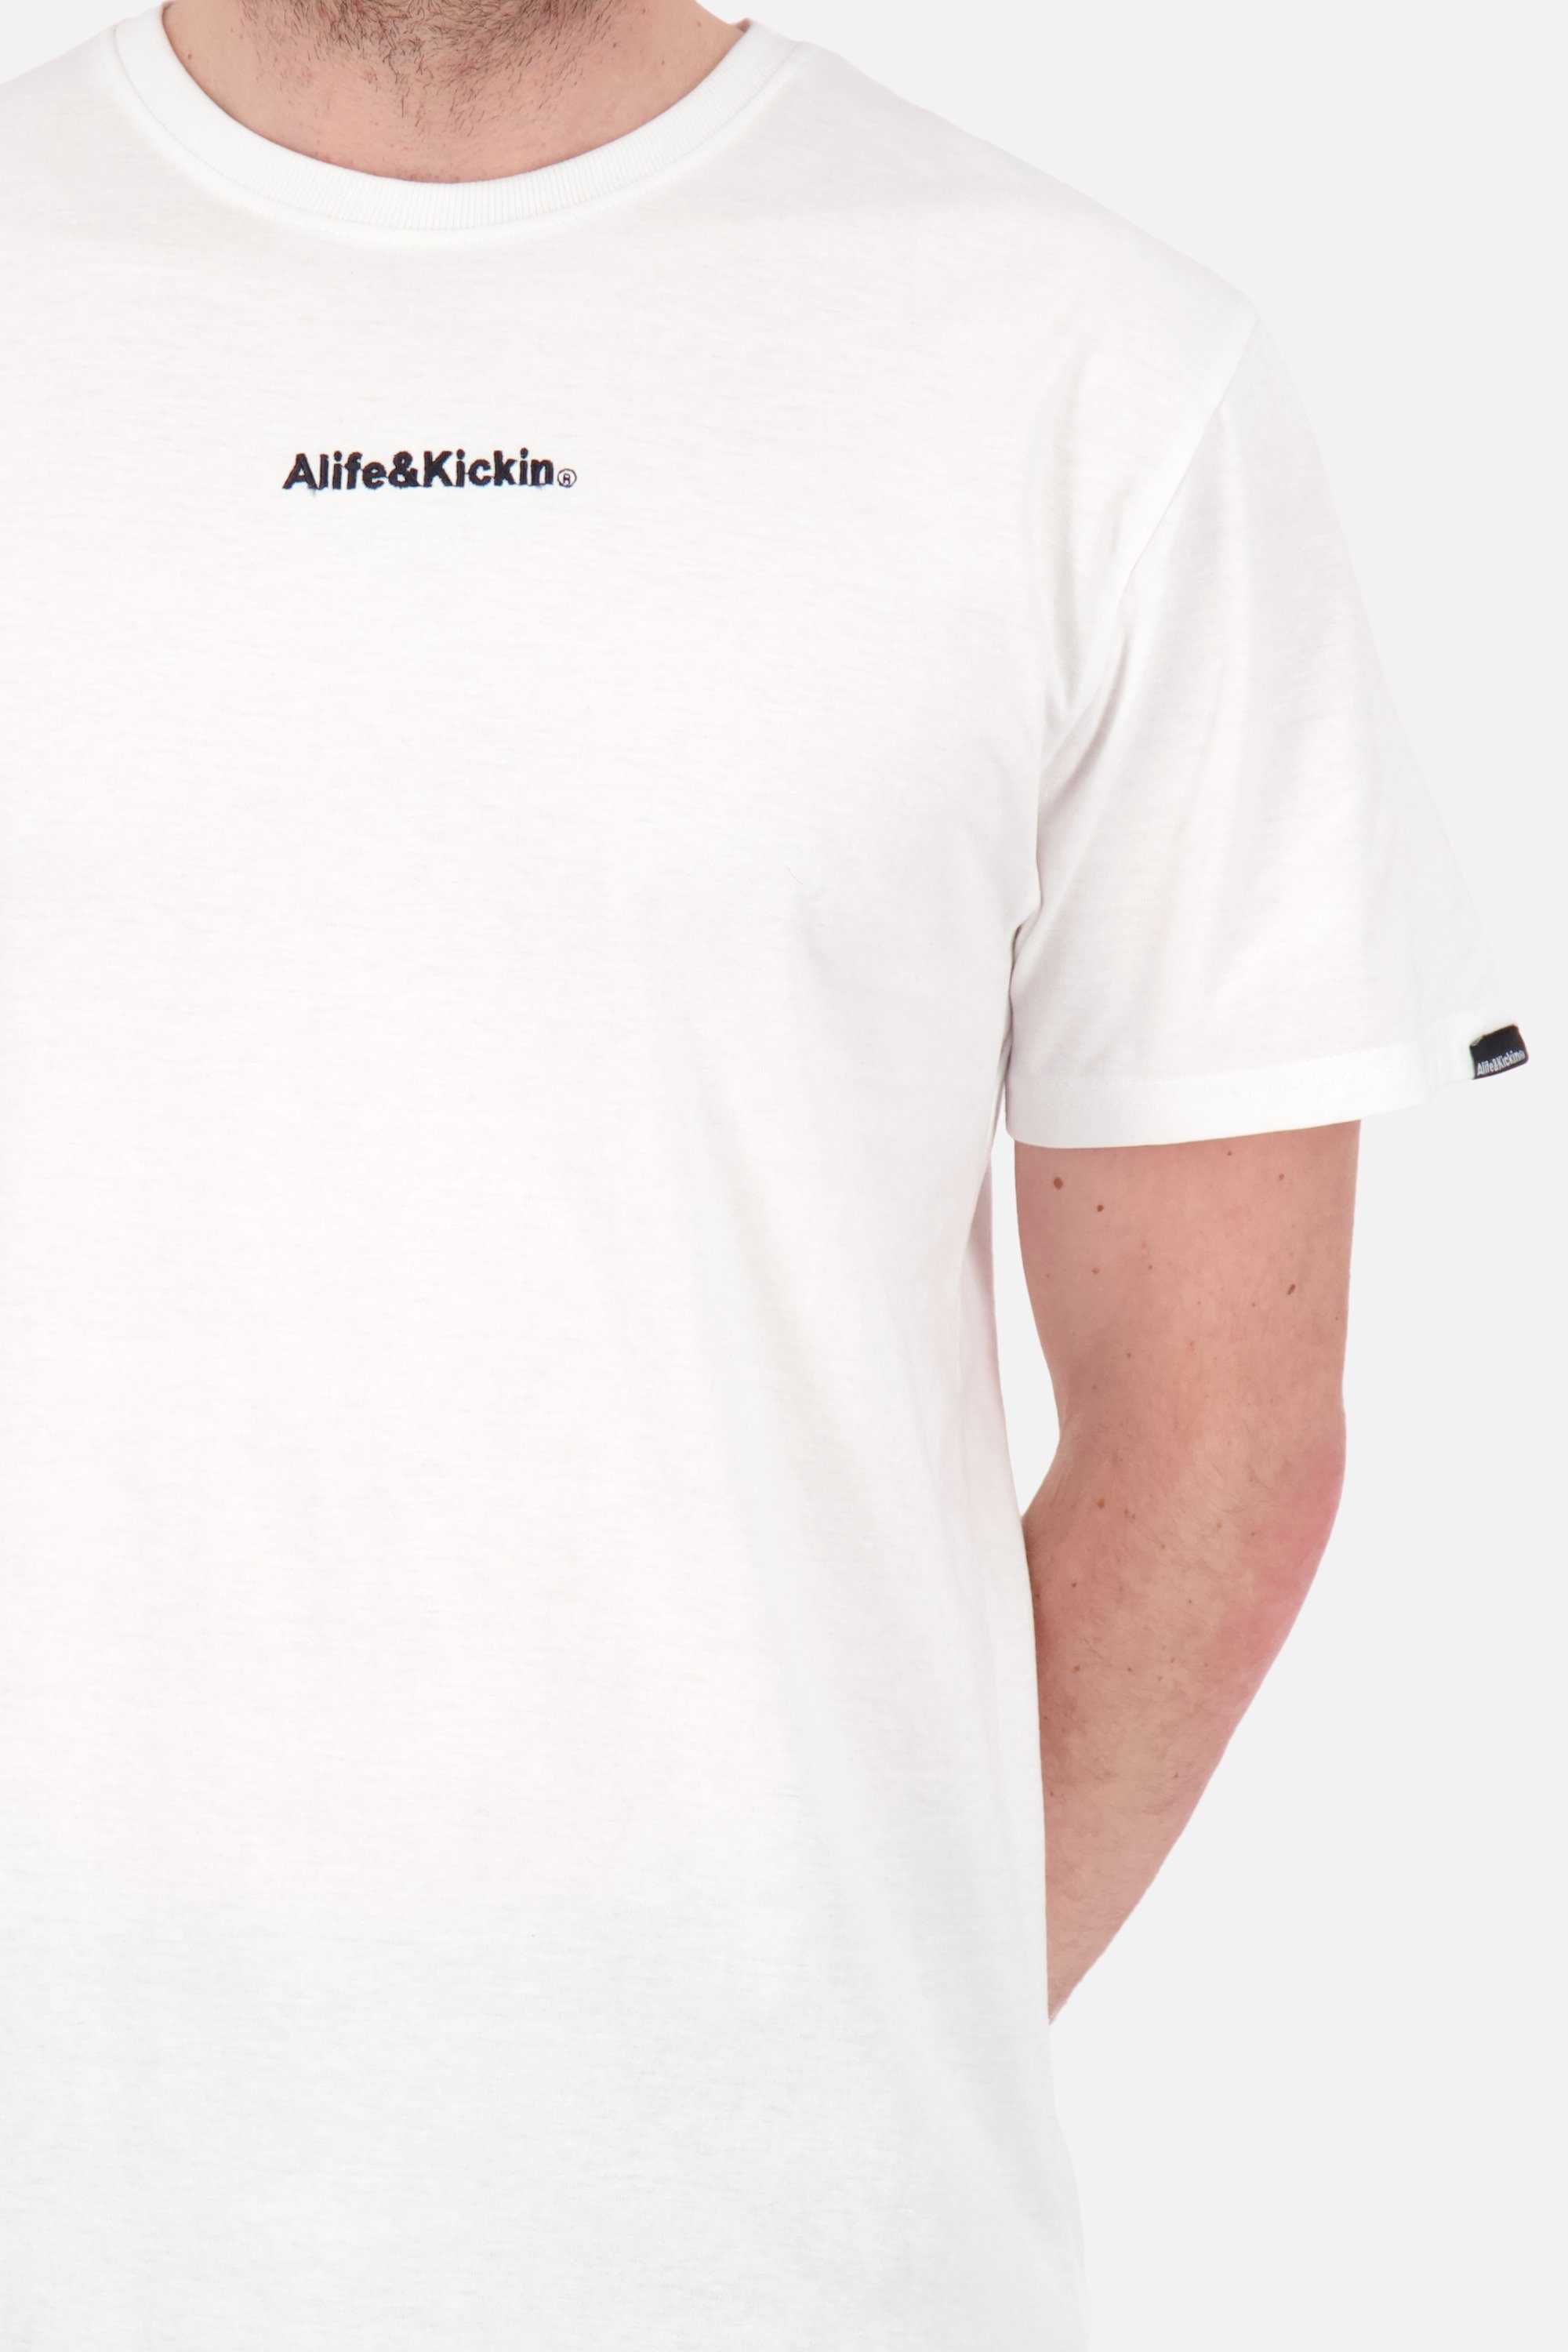 E white Kickin Alife Herren & AlfieAK Shirt Kurzarmshirt, Rundhalsshirt Shirt